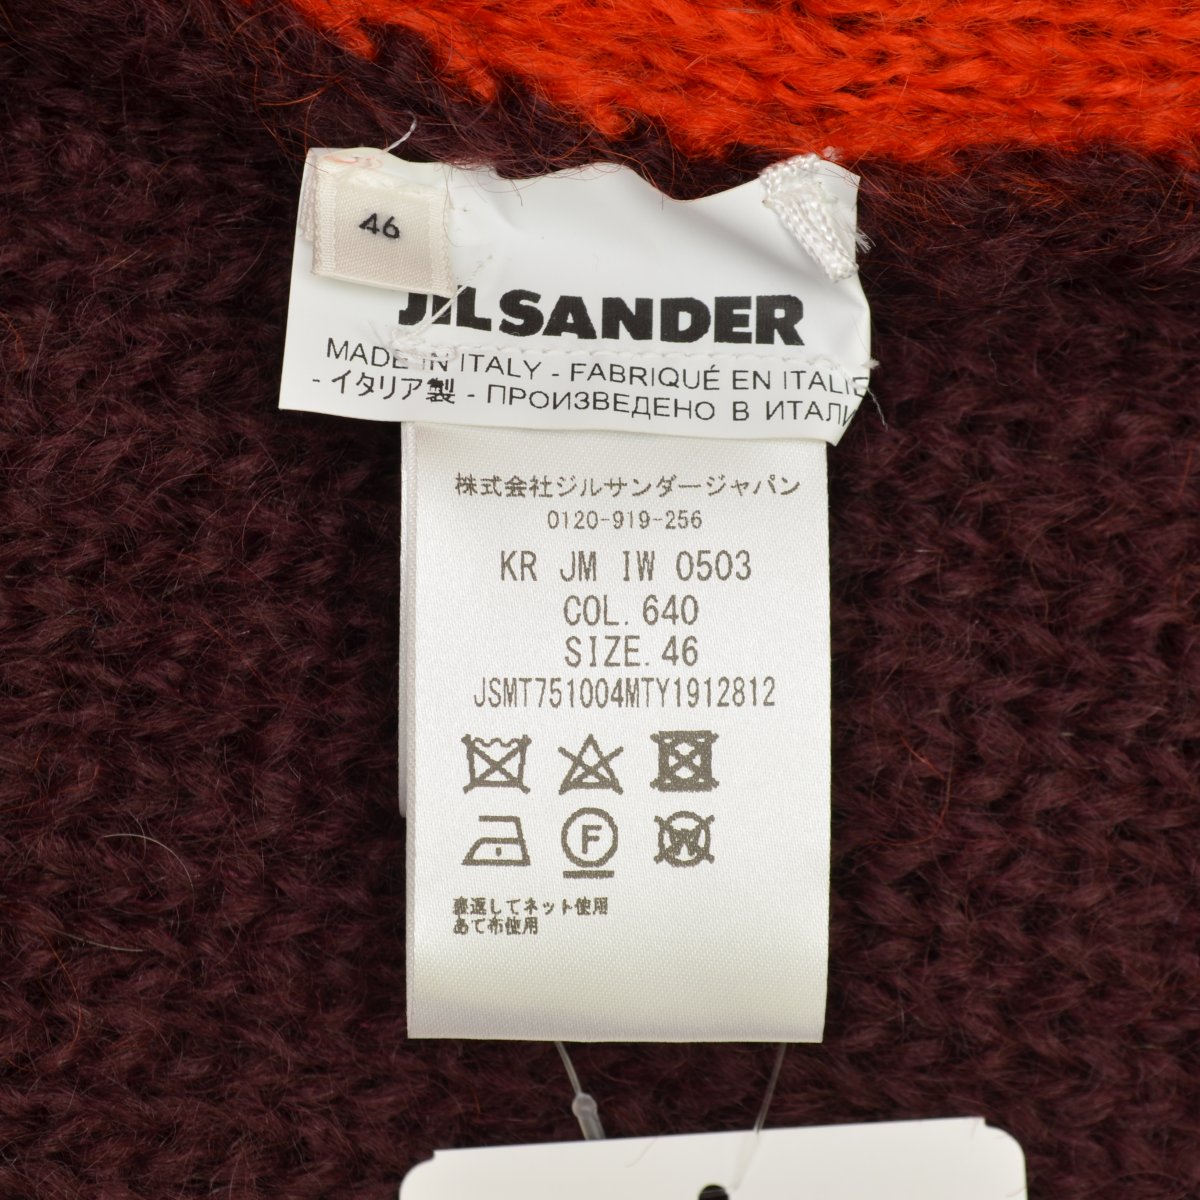 JIL SANDER / ジルサンダー 21AW JSMT751004 MTY19128 カラー切替 長袖ニットセーター  -ブランド古着の買取販売カンフル